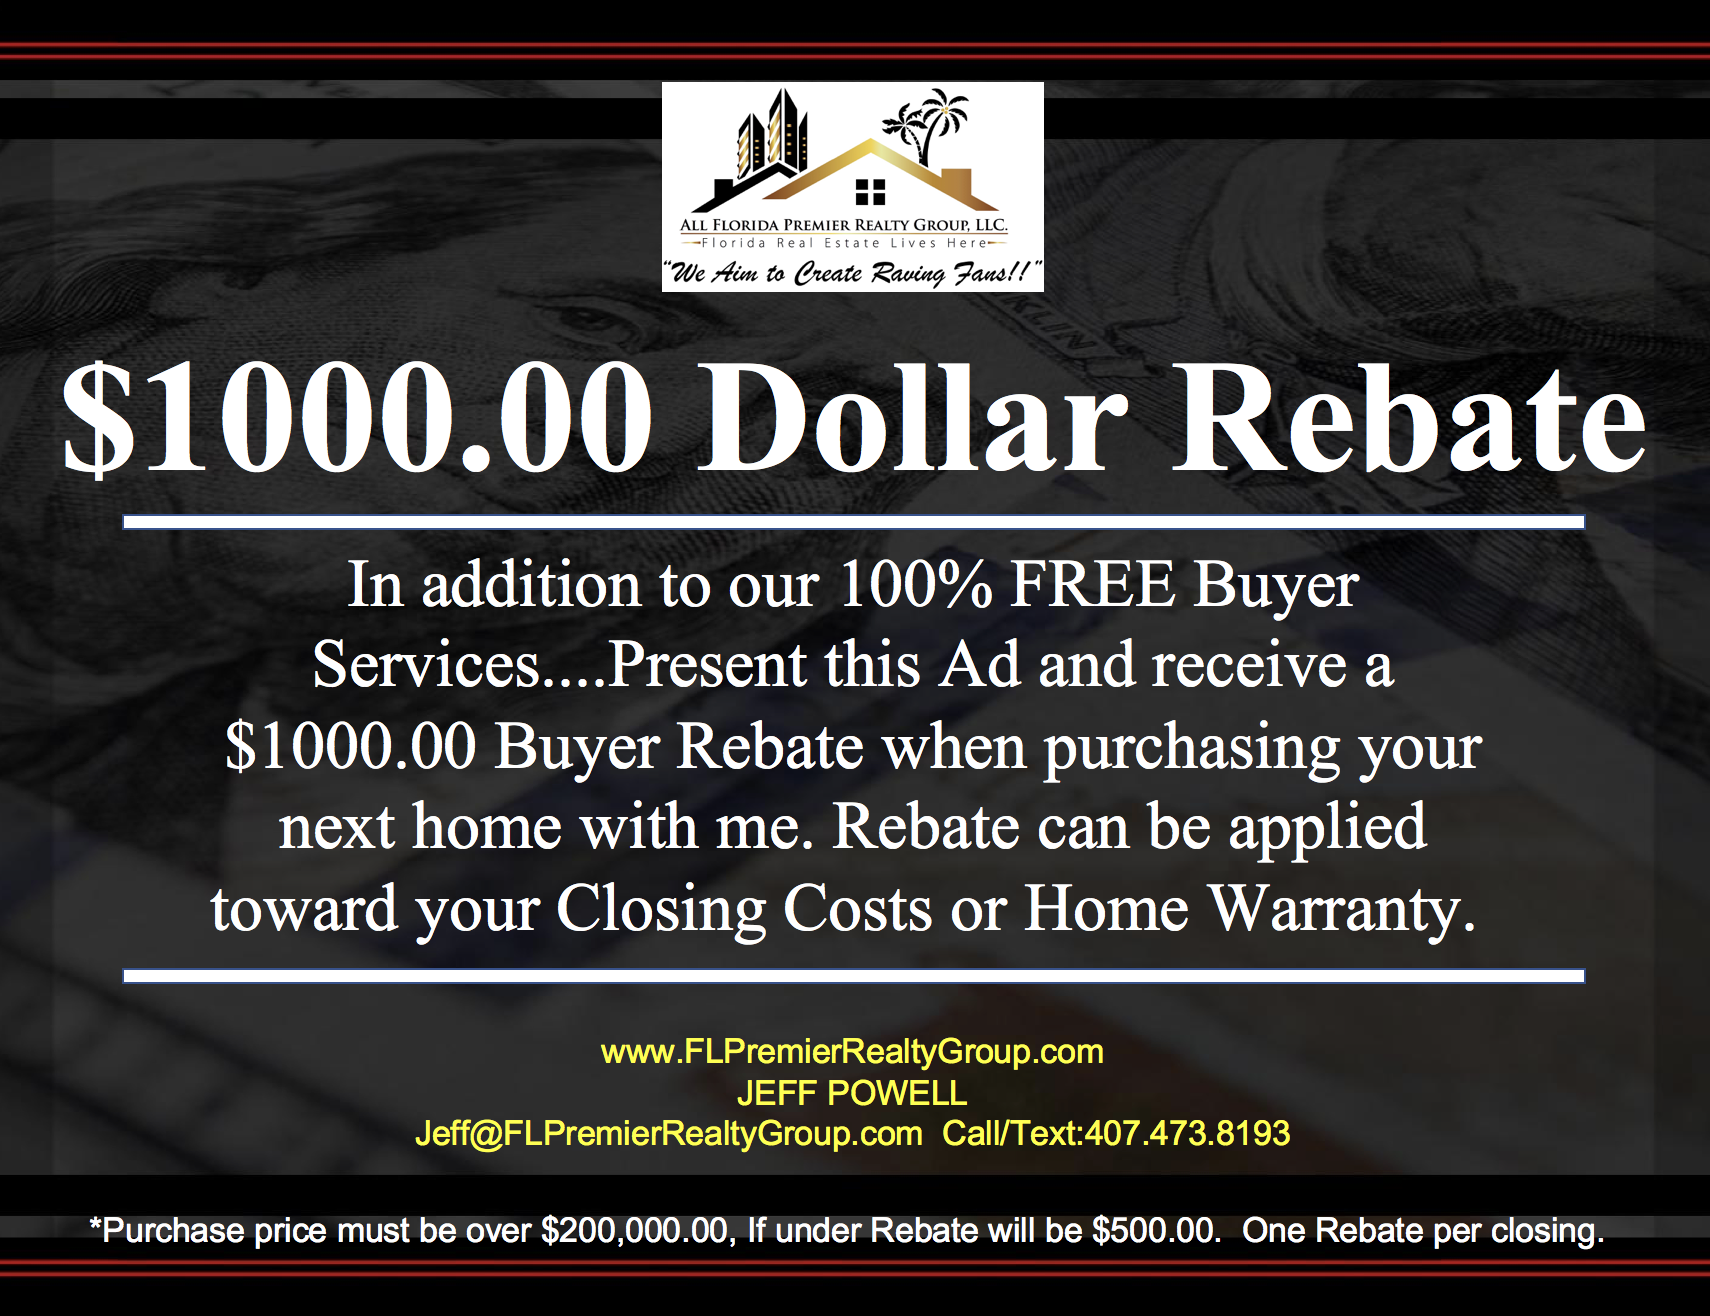  1 000 00 Buyer s Rebate